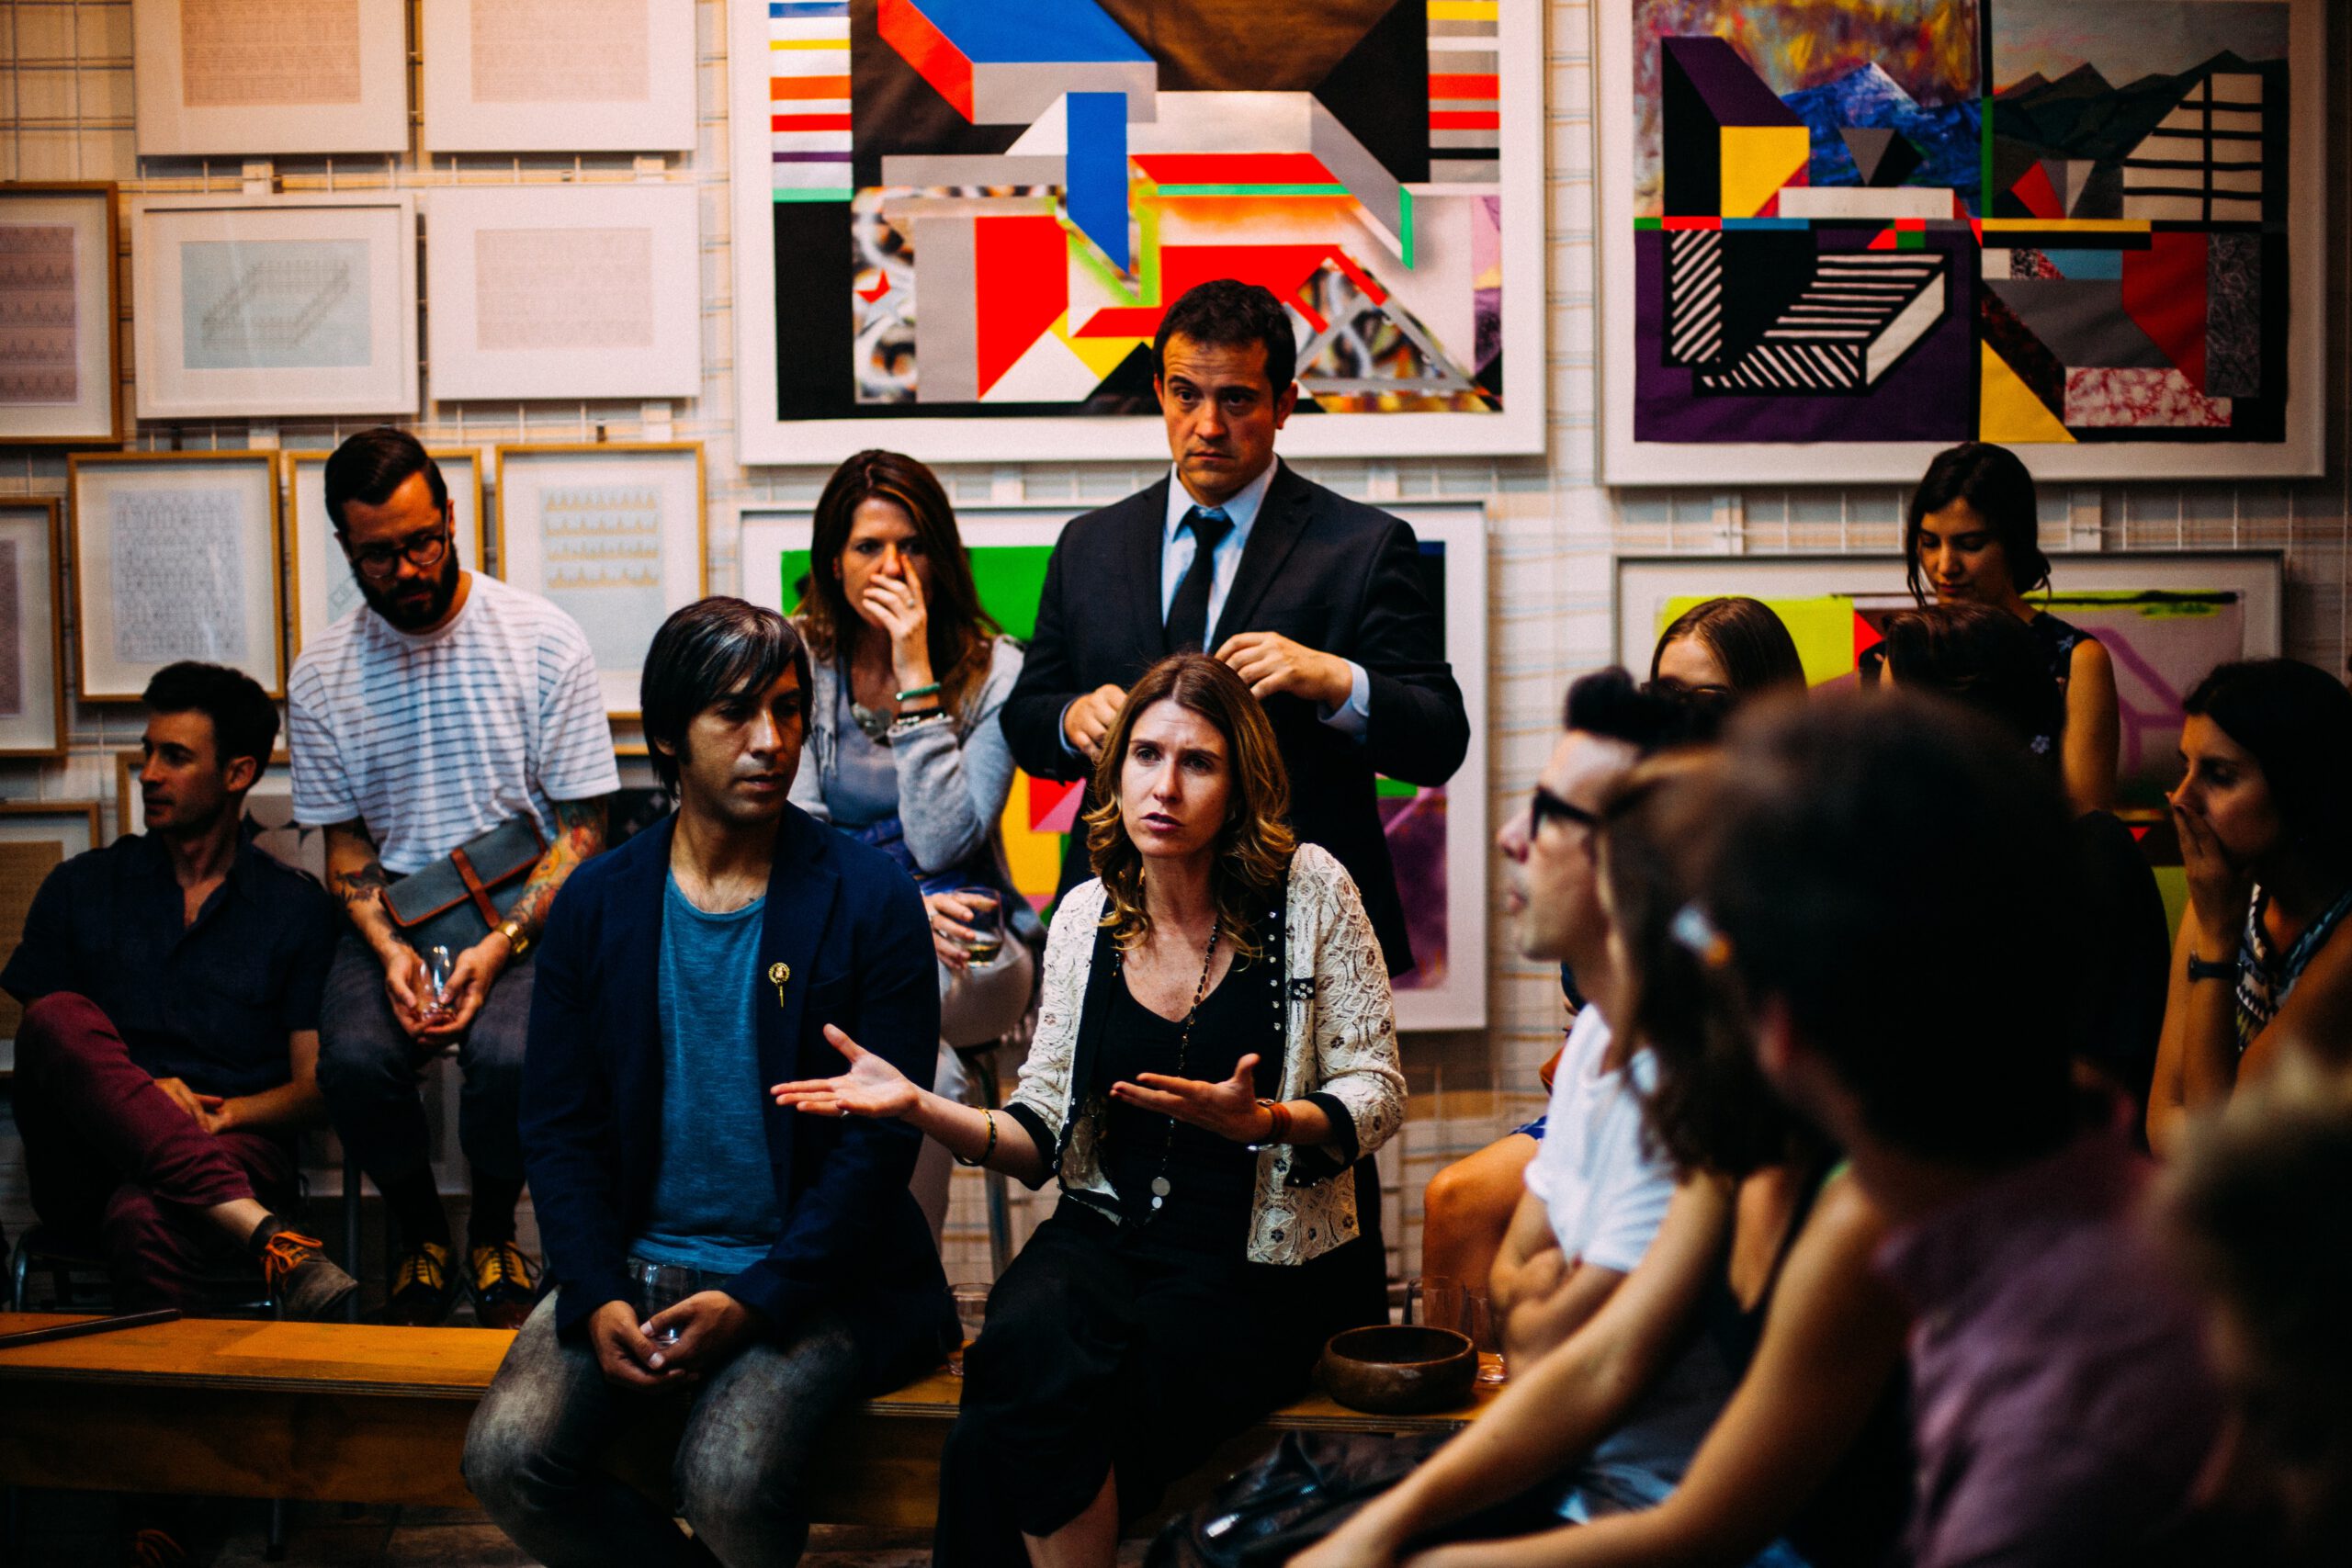 Foto: Eine Gruppe von 10 Menschen sitzen vor einer Wand mit bunten Kunstwerken und diskutieren. Eine Frau in der Mitte sagt etwas und hat die Arme vor sich fragend geöffnet.